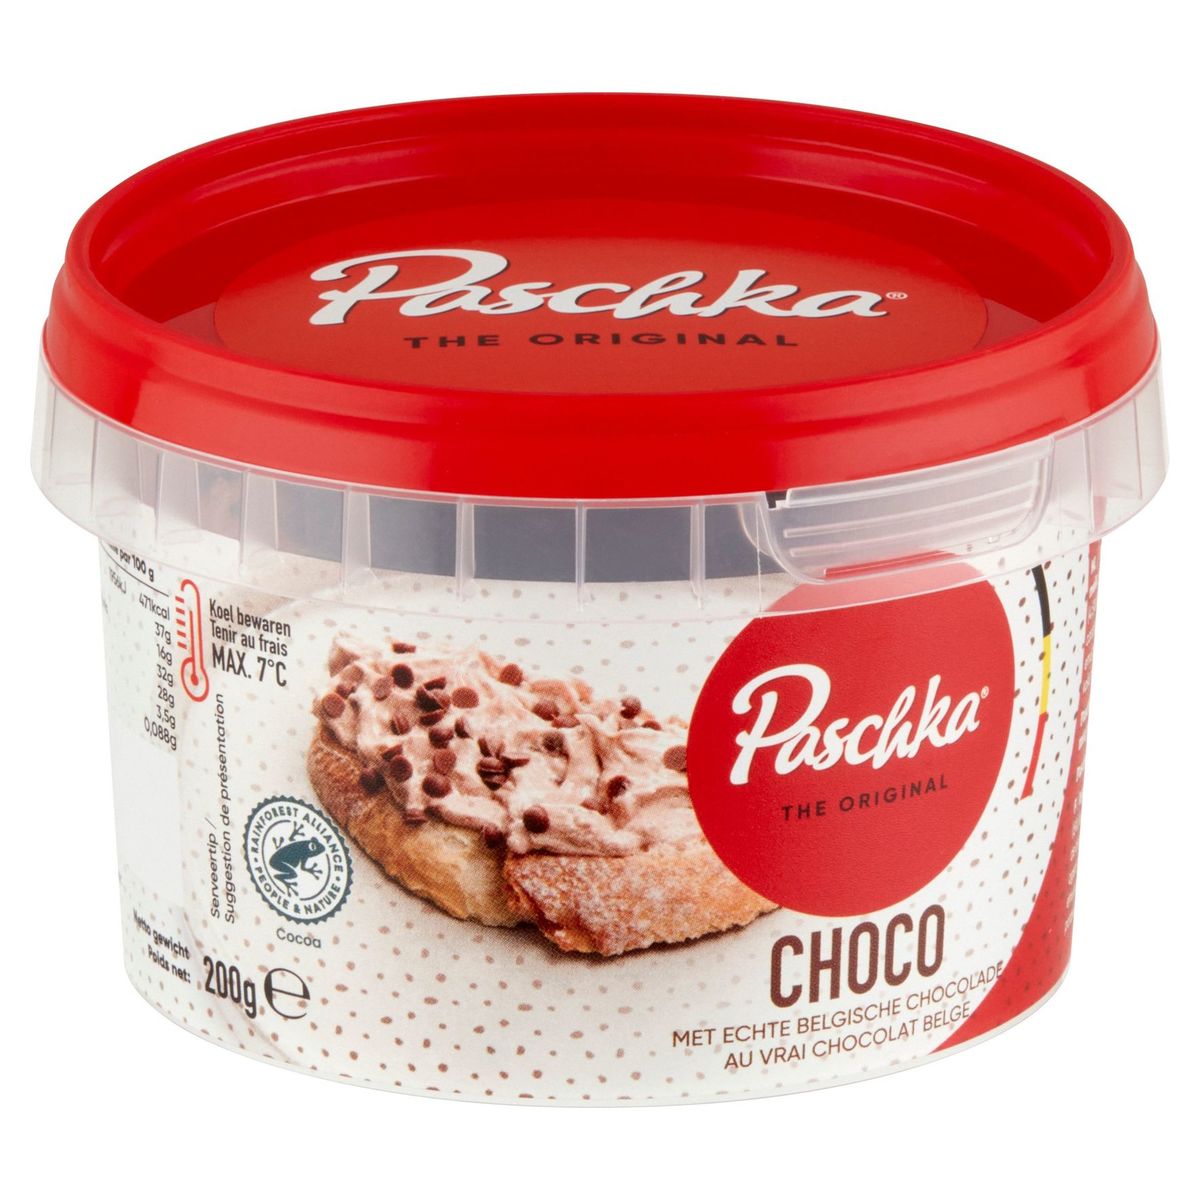 Paschka The Original Choco met Echte Belgische Chocolade 200 g